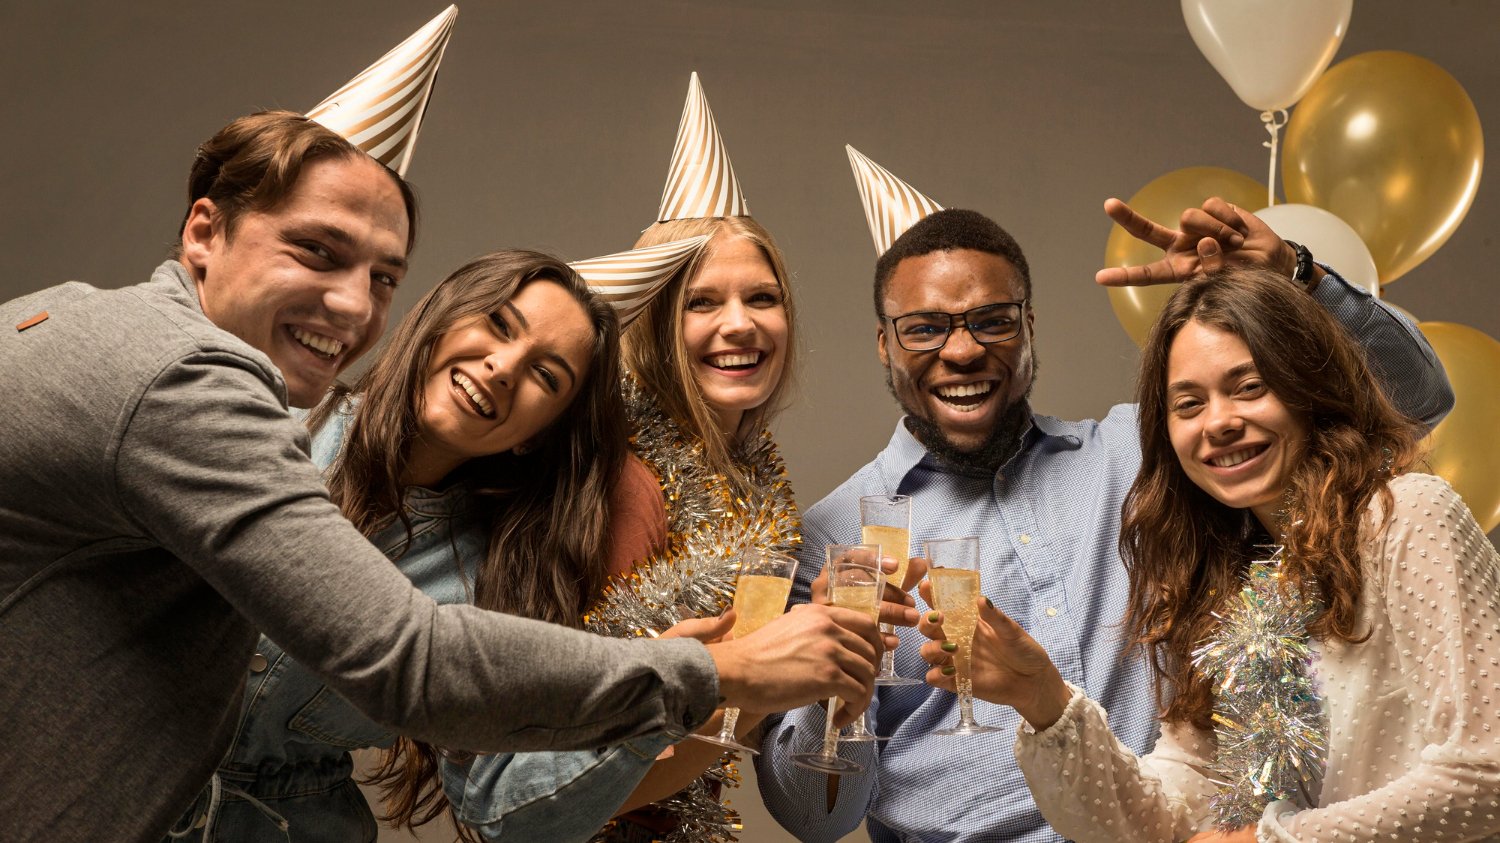 Amigos comemorando a chegada do ano novo, usando chapéus de festa e segurando taças de bebidas.